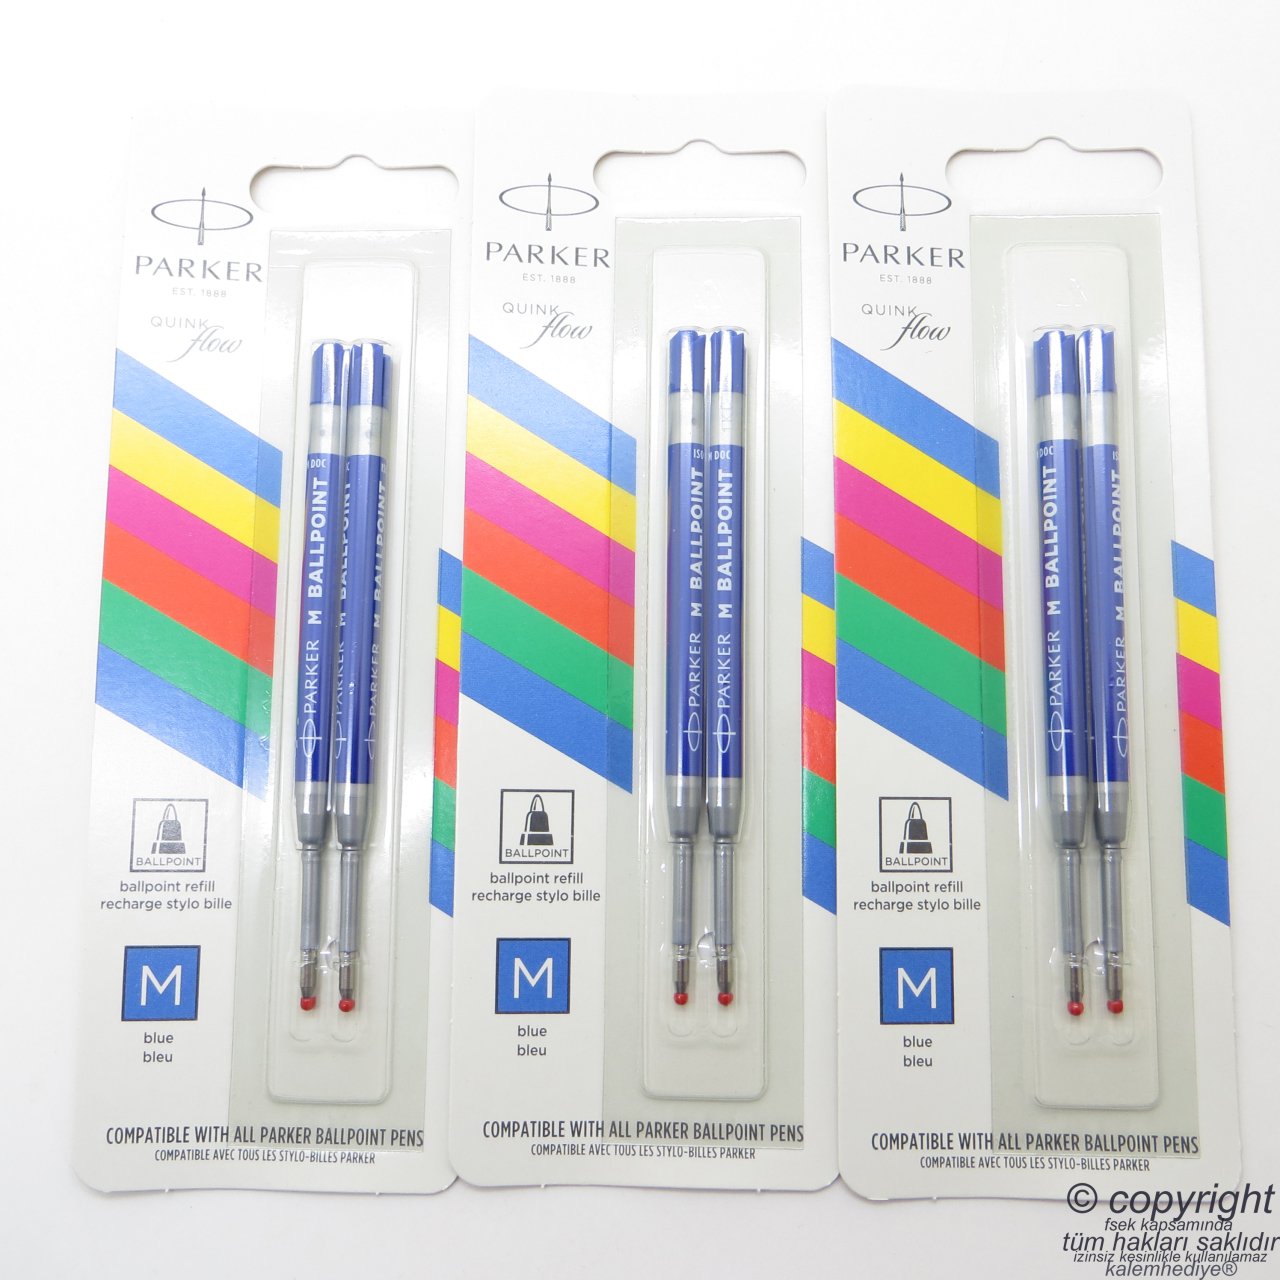 Parker Tükenmez Kalem Yedeği - Medium Mavi 2'li Blister Refil (Benzer ucu kullanan kalemlerle uyumludur)